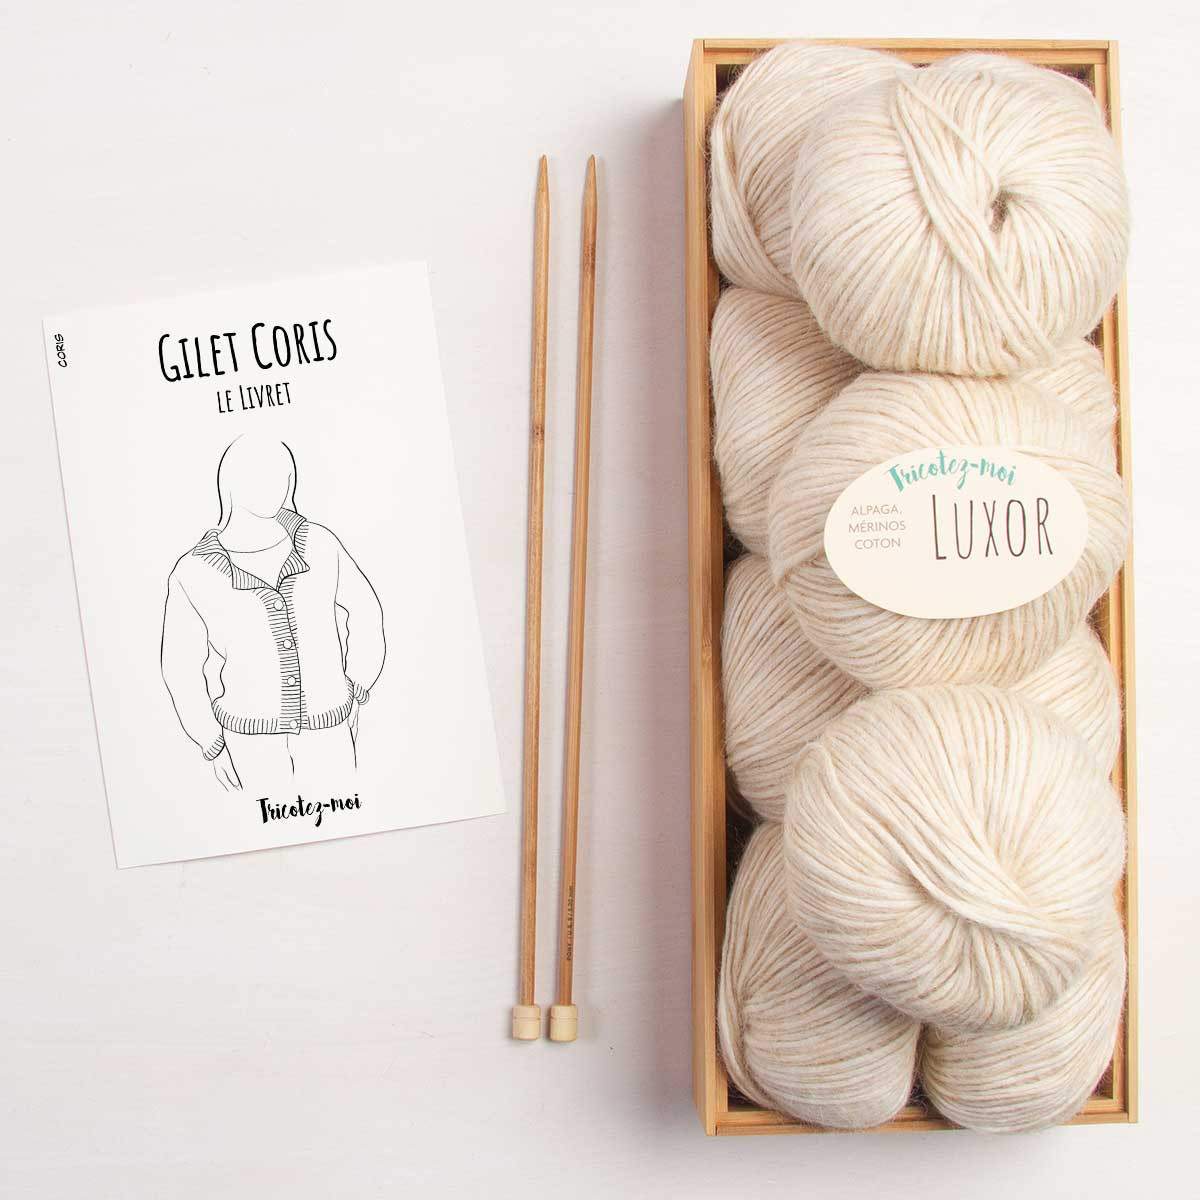 Coris Cardigan knitting kit